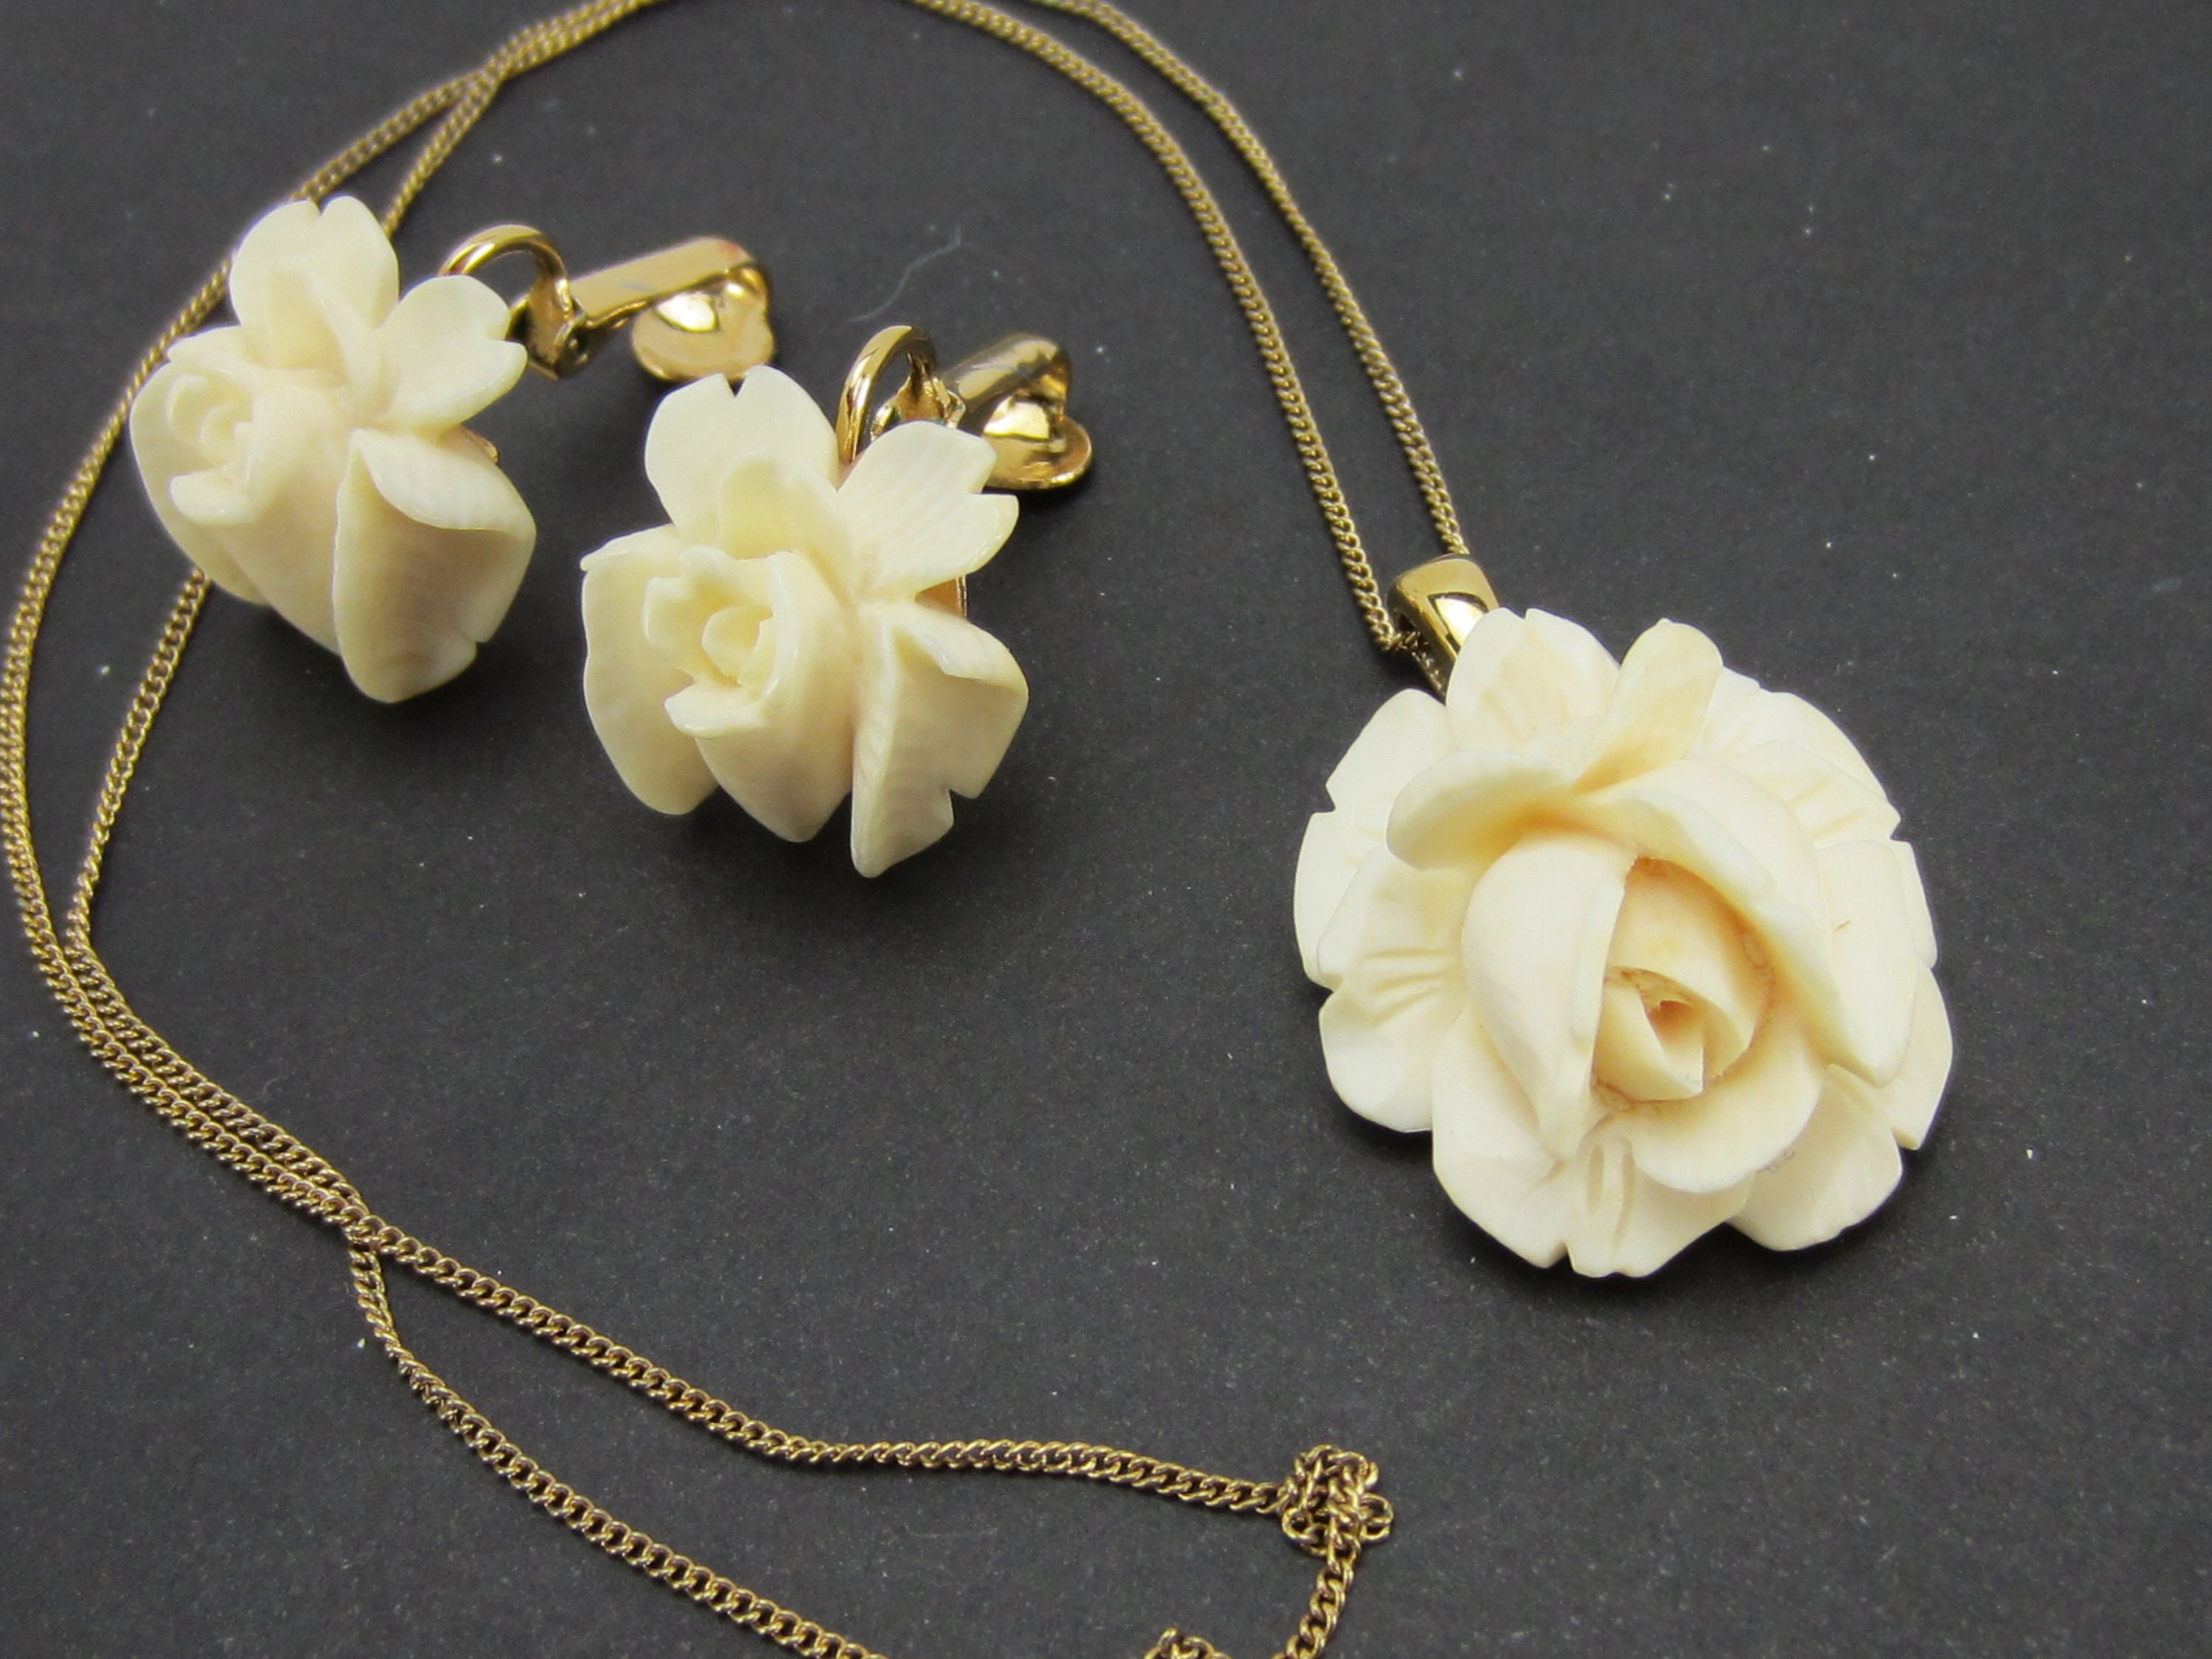 Vintage Gold Rose Screw Back Earrings Simple Vintage Style, Roses